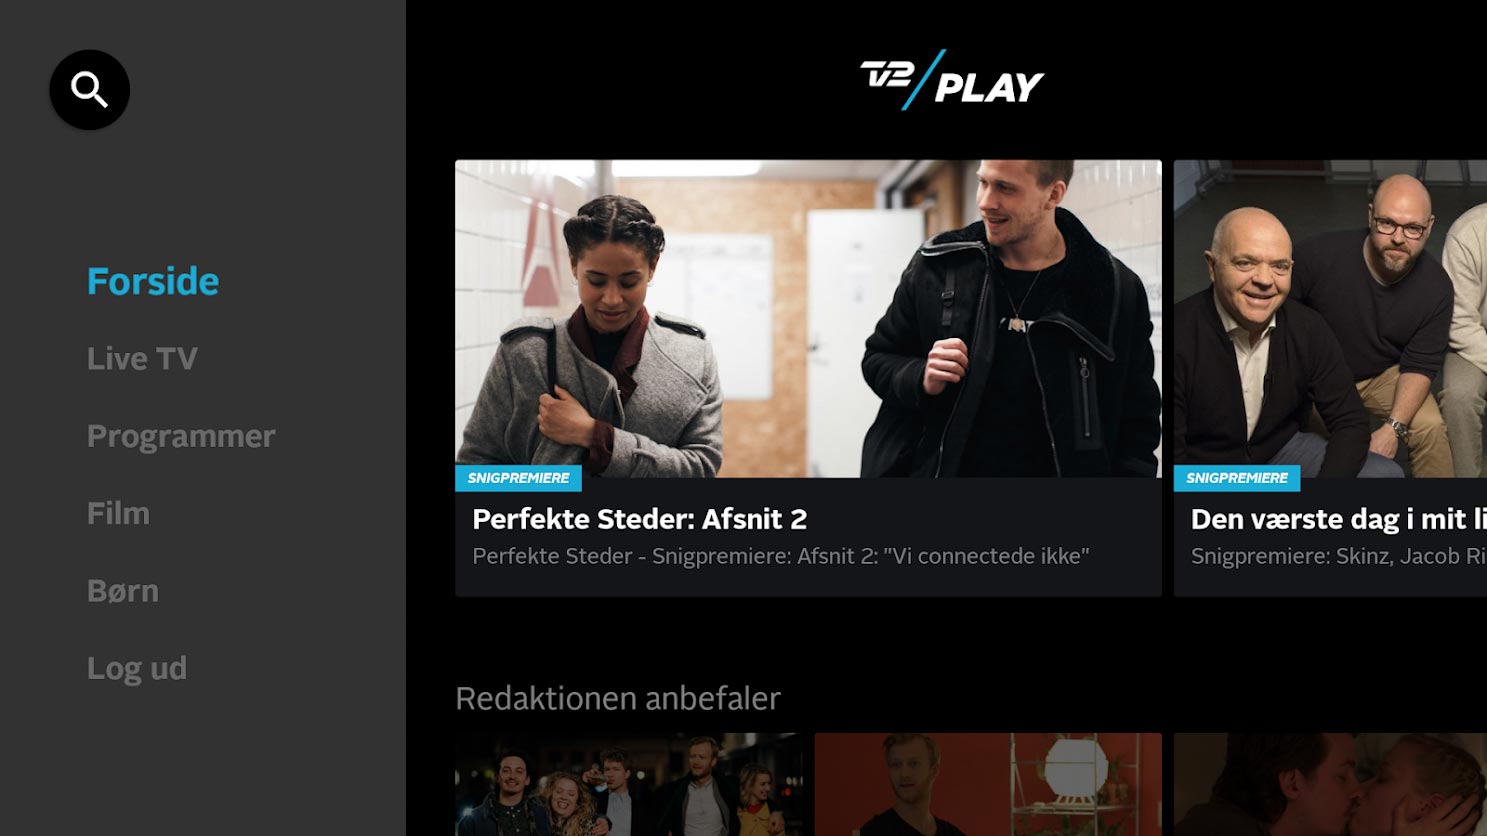 TV2 Play på TV - FlatpanelsDK